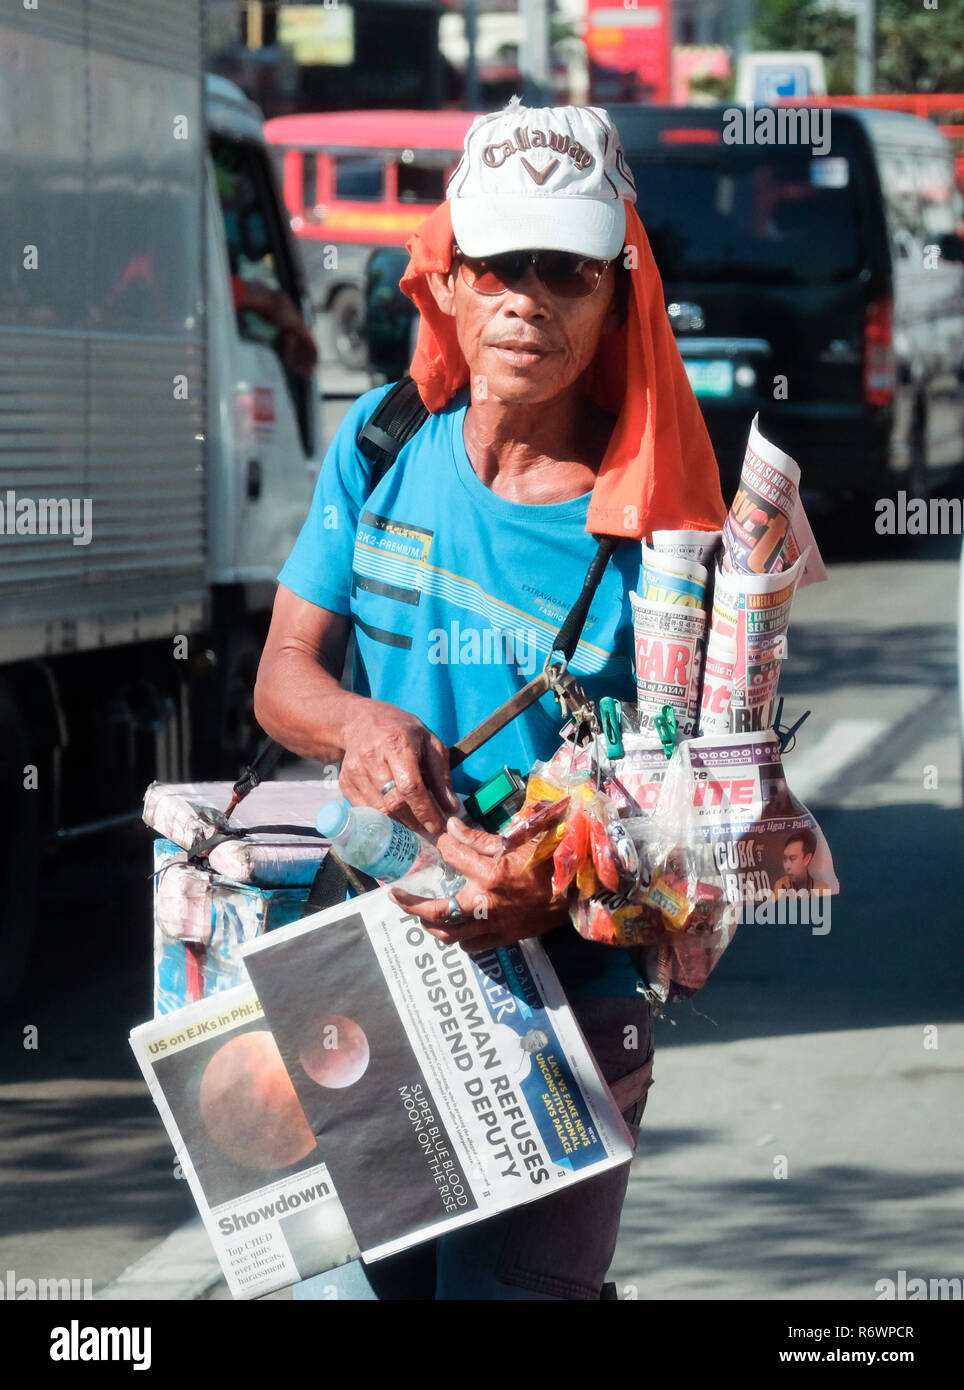 Street Hersteller zwischen Autos in einem Stau versuchen, Zeitung für Fahrer und Fahrgäste in Quezon City, Metro Manila, Philippinen zu verkaufen Stockfoto